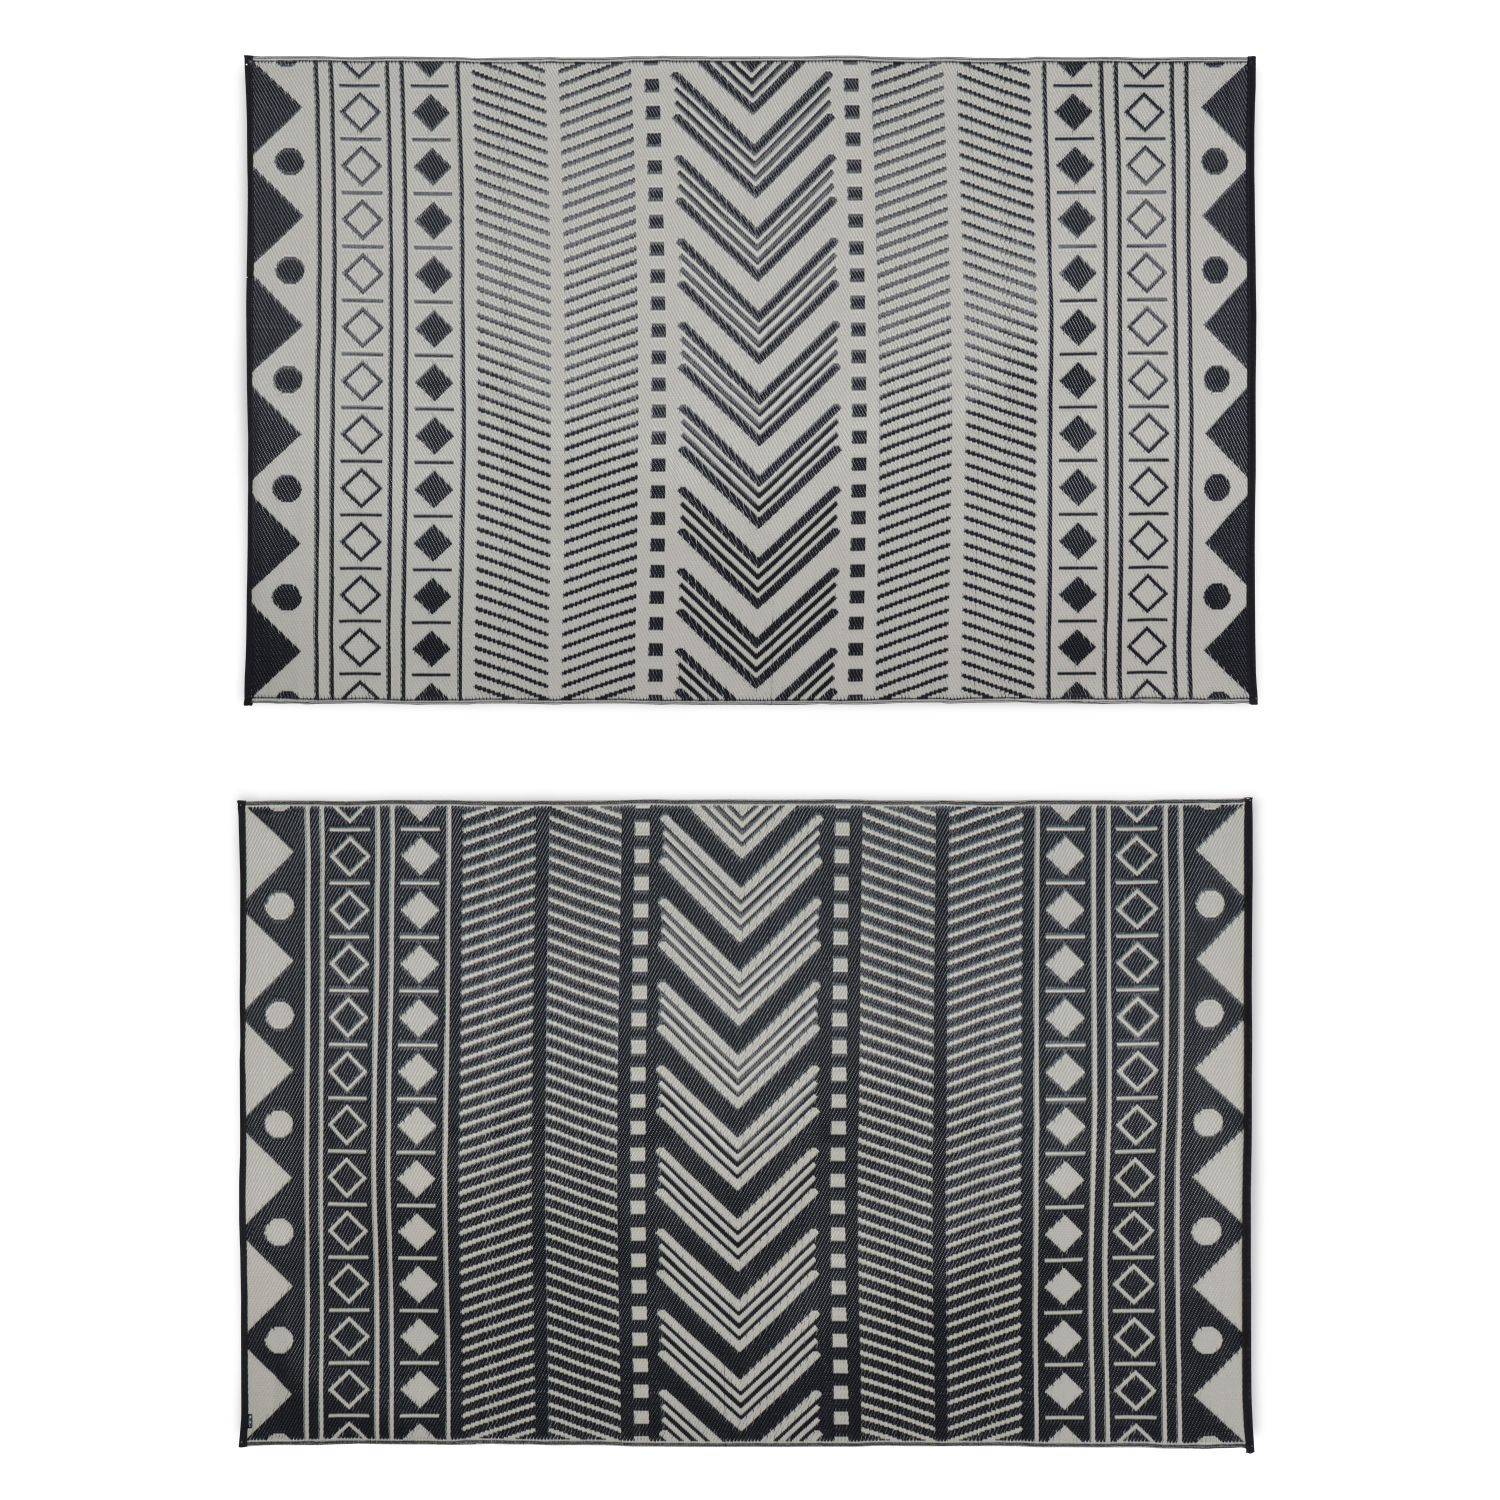 Outdoor rug - 180x270cm - Jacquard, reversible, rectangular, indoor/outdoor use - Bamako - Black-beige,sweeek,Photo2